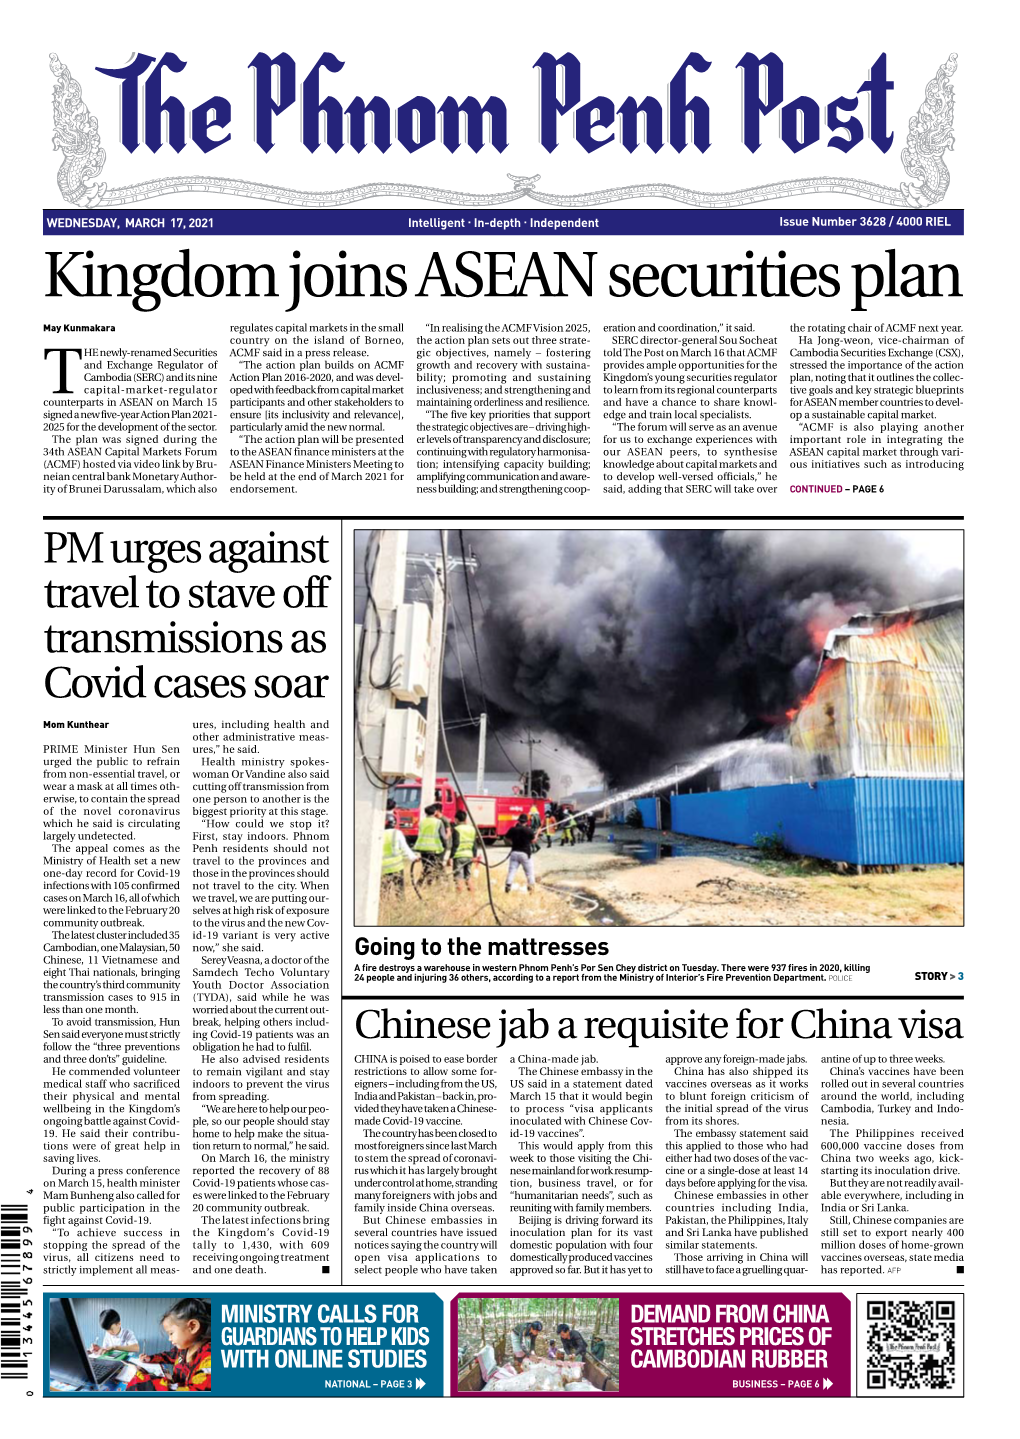 Kingdom Joins ASEAN Securities Plan